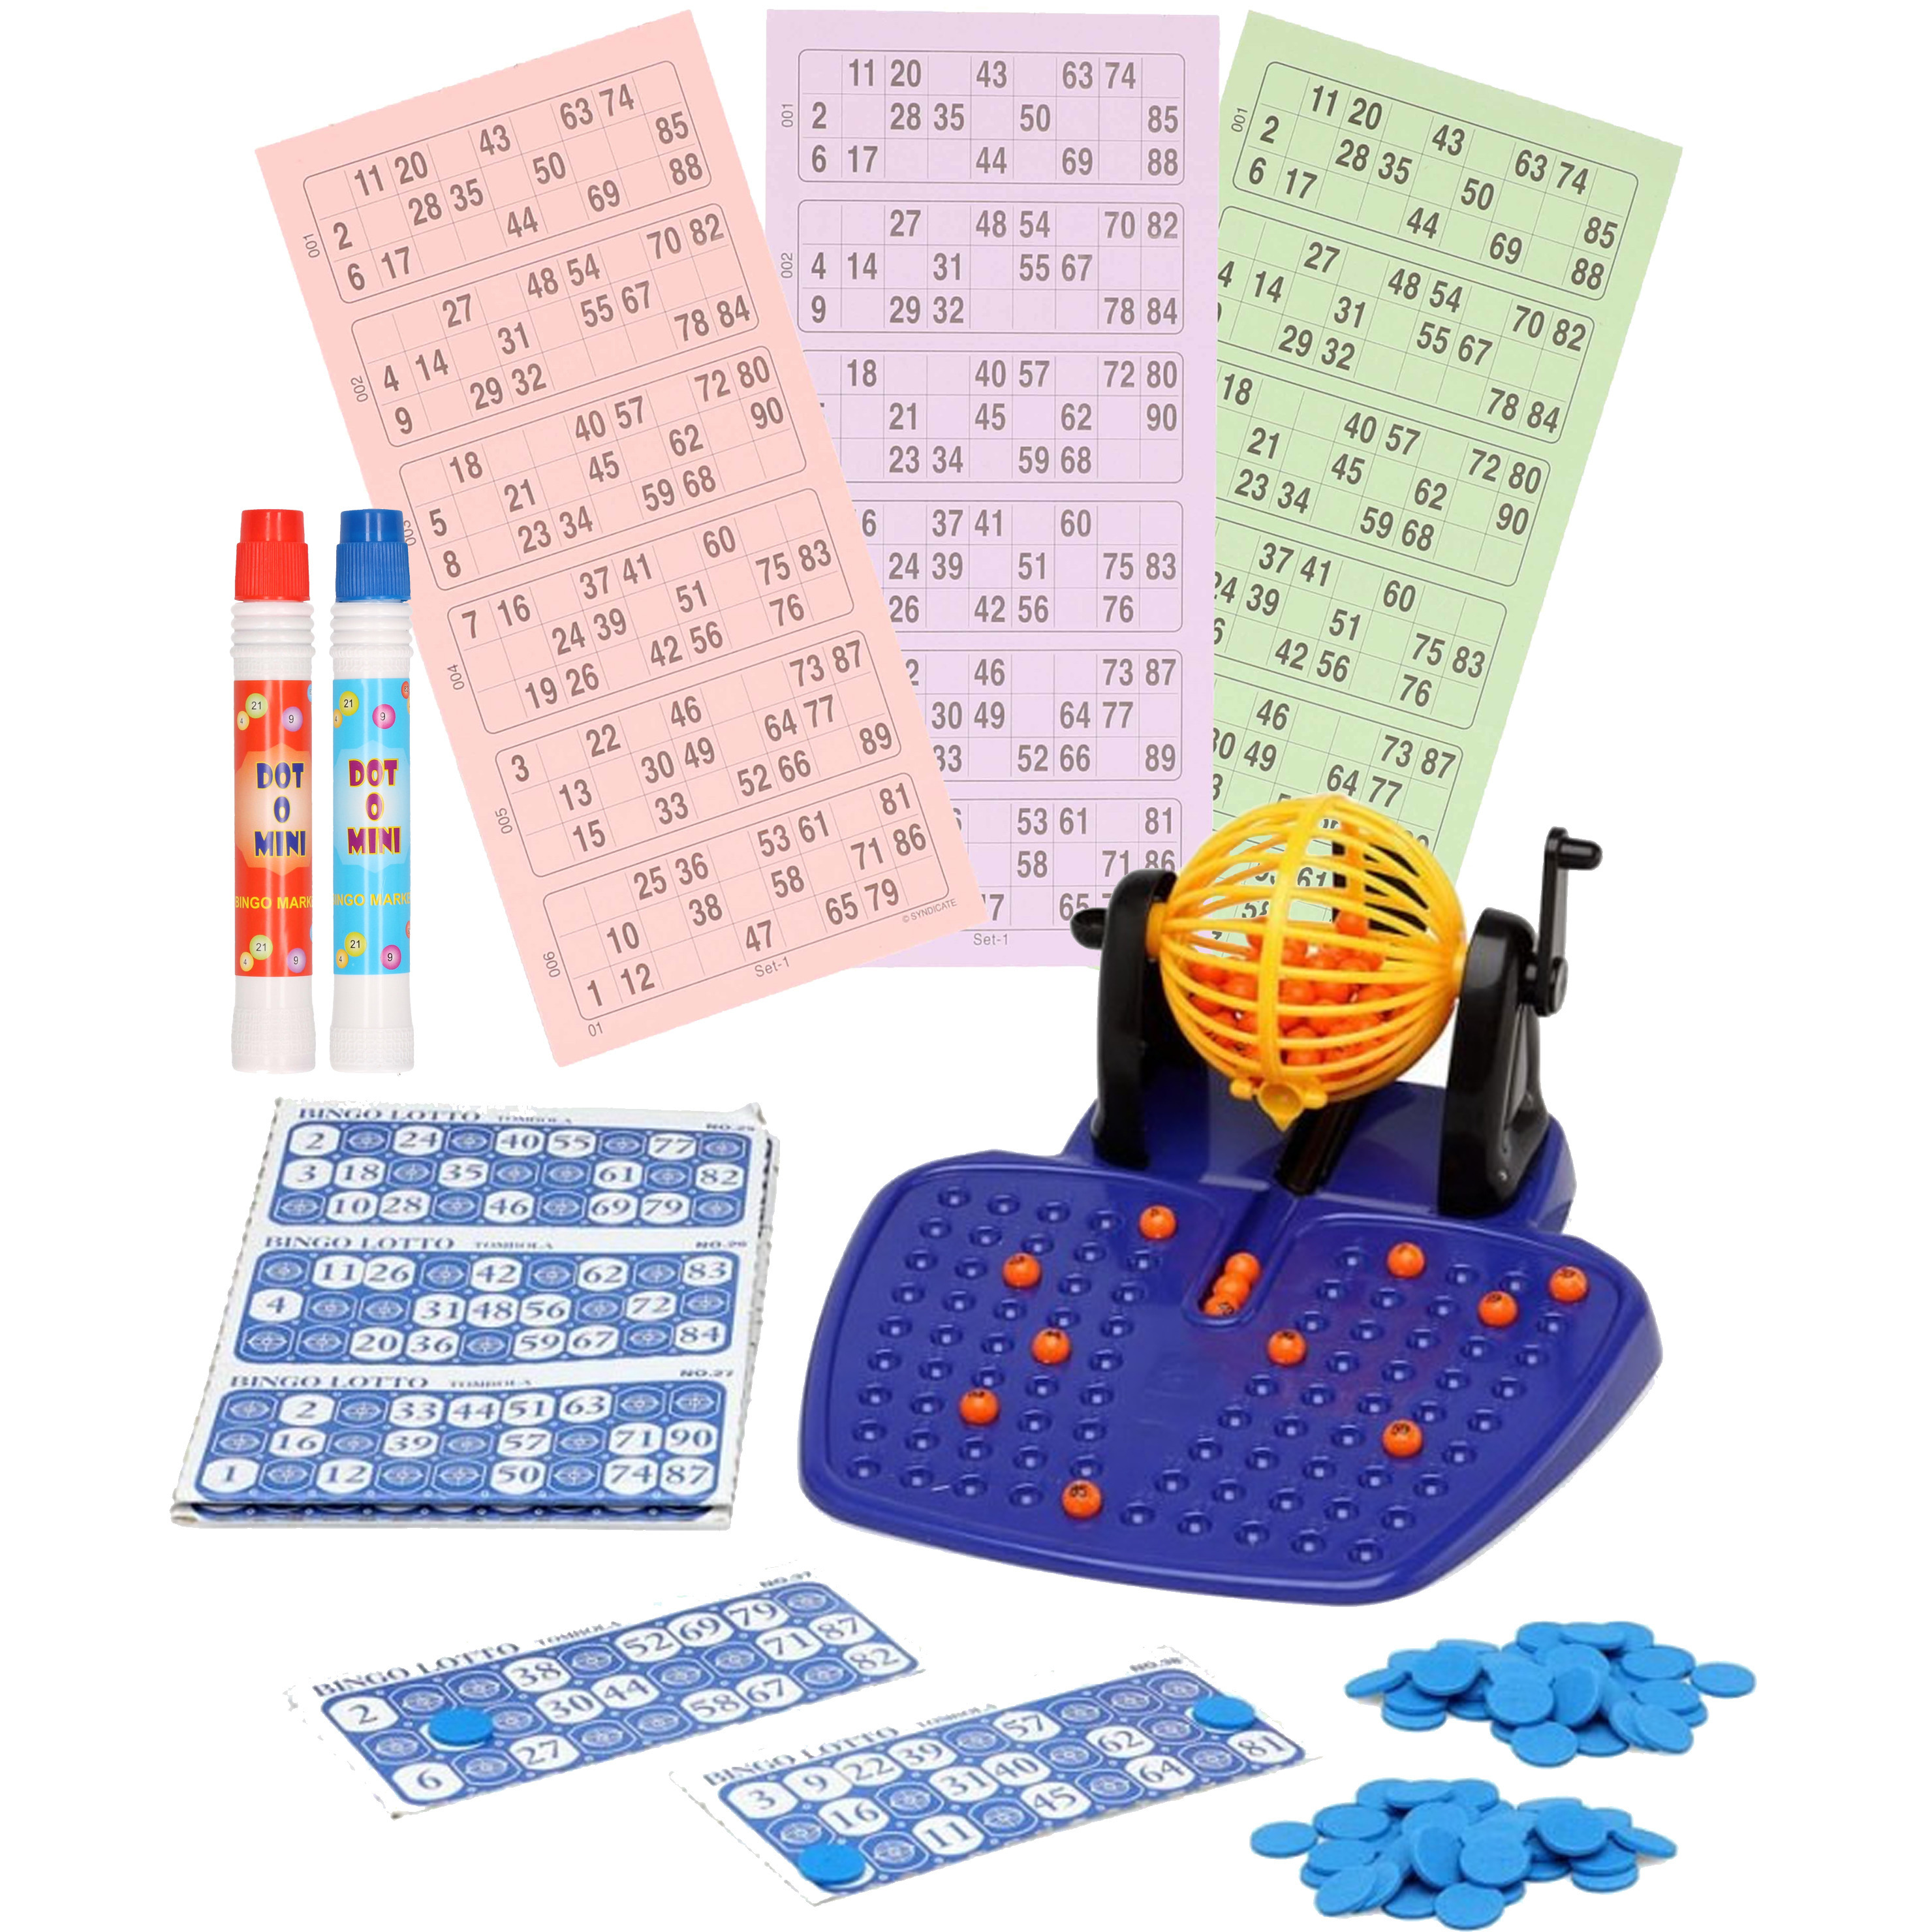 Bingospel gekleurd-oranje 1-90 met bingomolen, 48 bingokaarten en 2 bingostiften